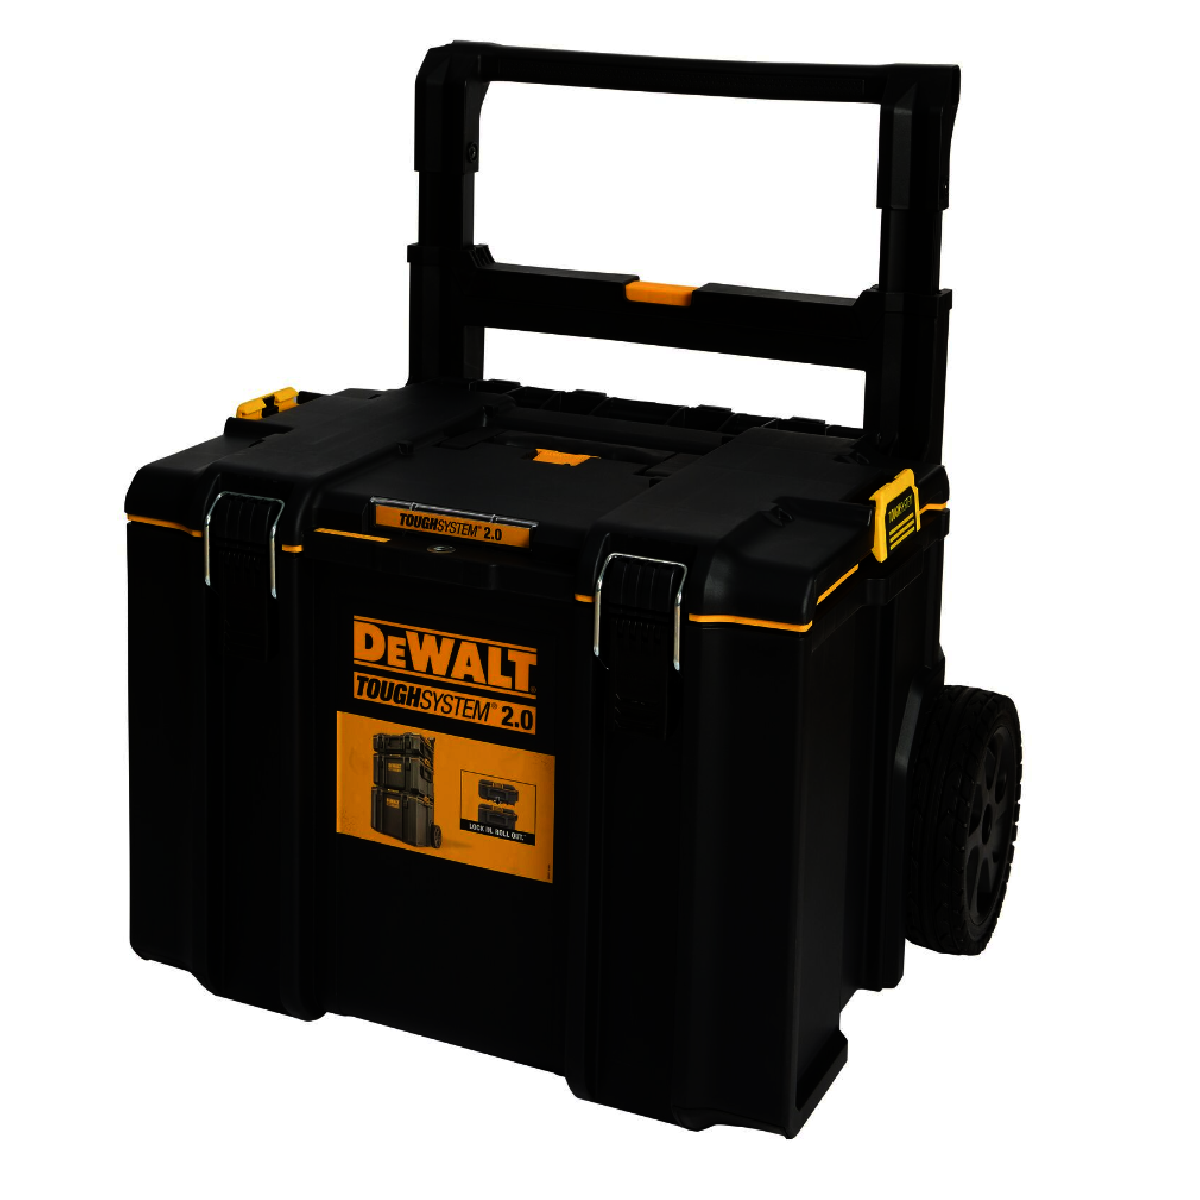 DEWALT DWST08165 TOUGH SYSTEM 2.0 TOOL BOX 